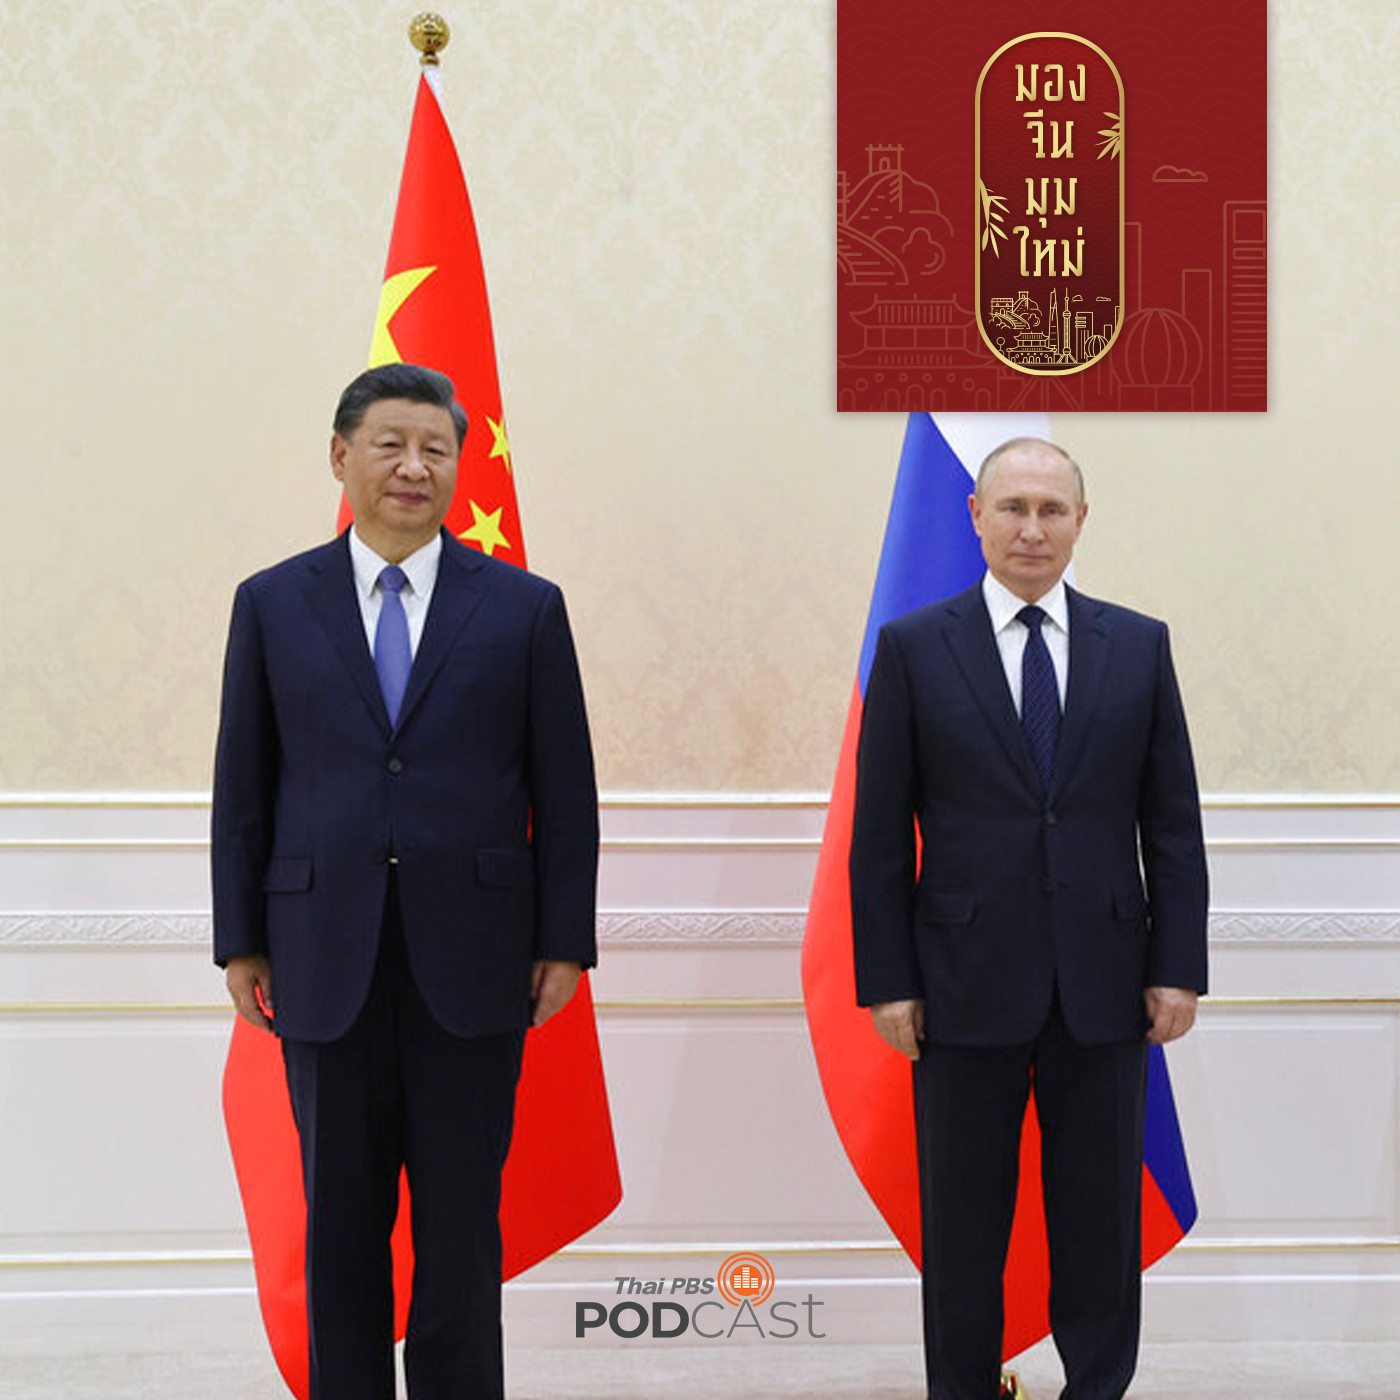 EP. 78: ผู้นำจีนพบผู้นำรัสเซีย ประชุมสุดยอดองค์การความร่วมมือเซี่ยงไฮ้  (SCO)